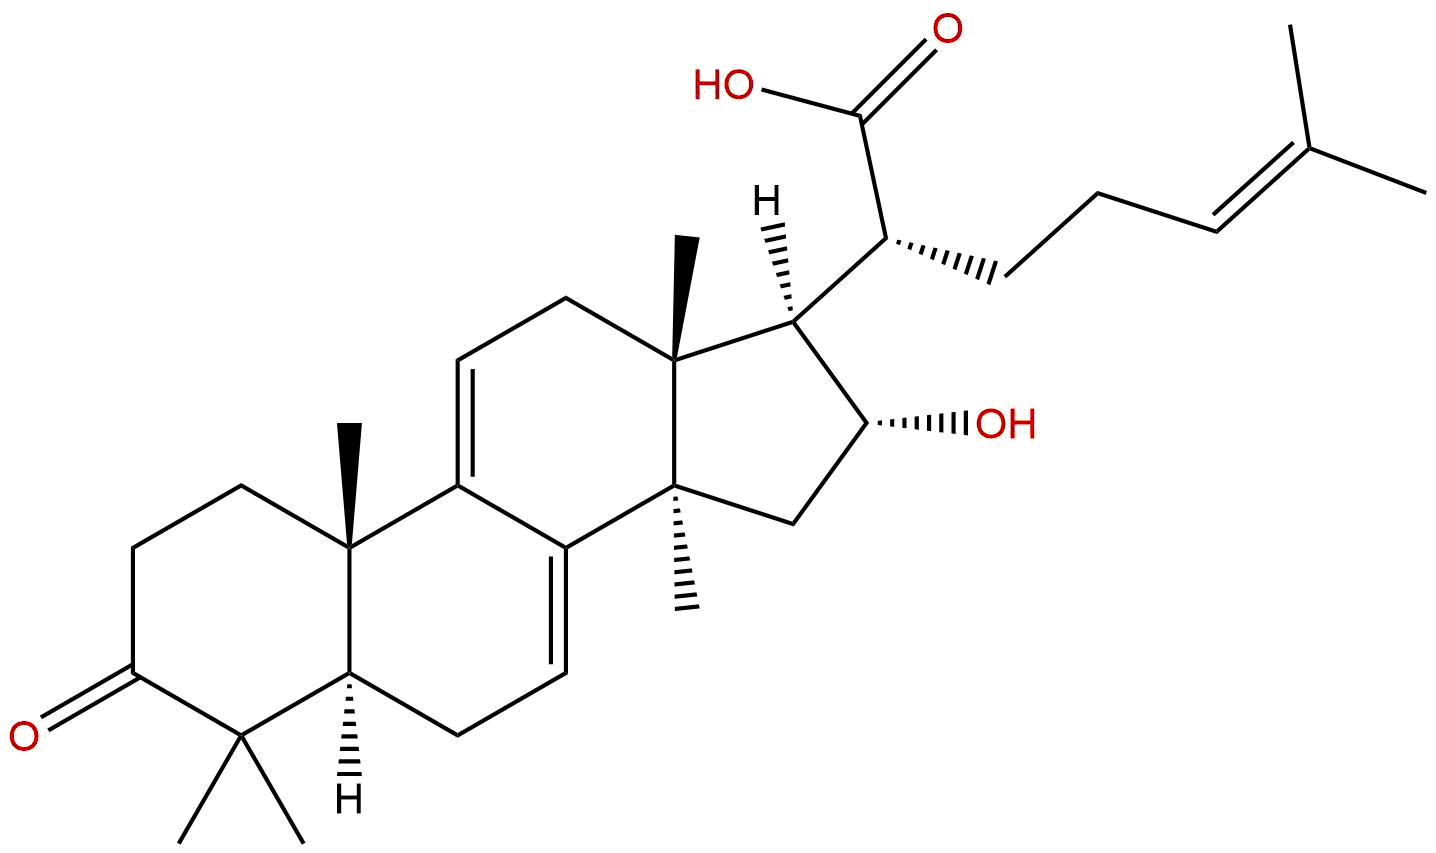 16α-hydroxy-3-oxo-lanosta-7,9(11),24-trien-21-oic acid